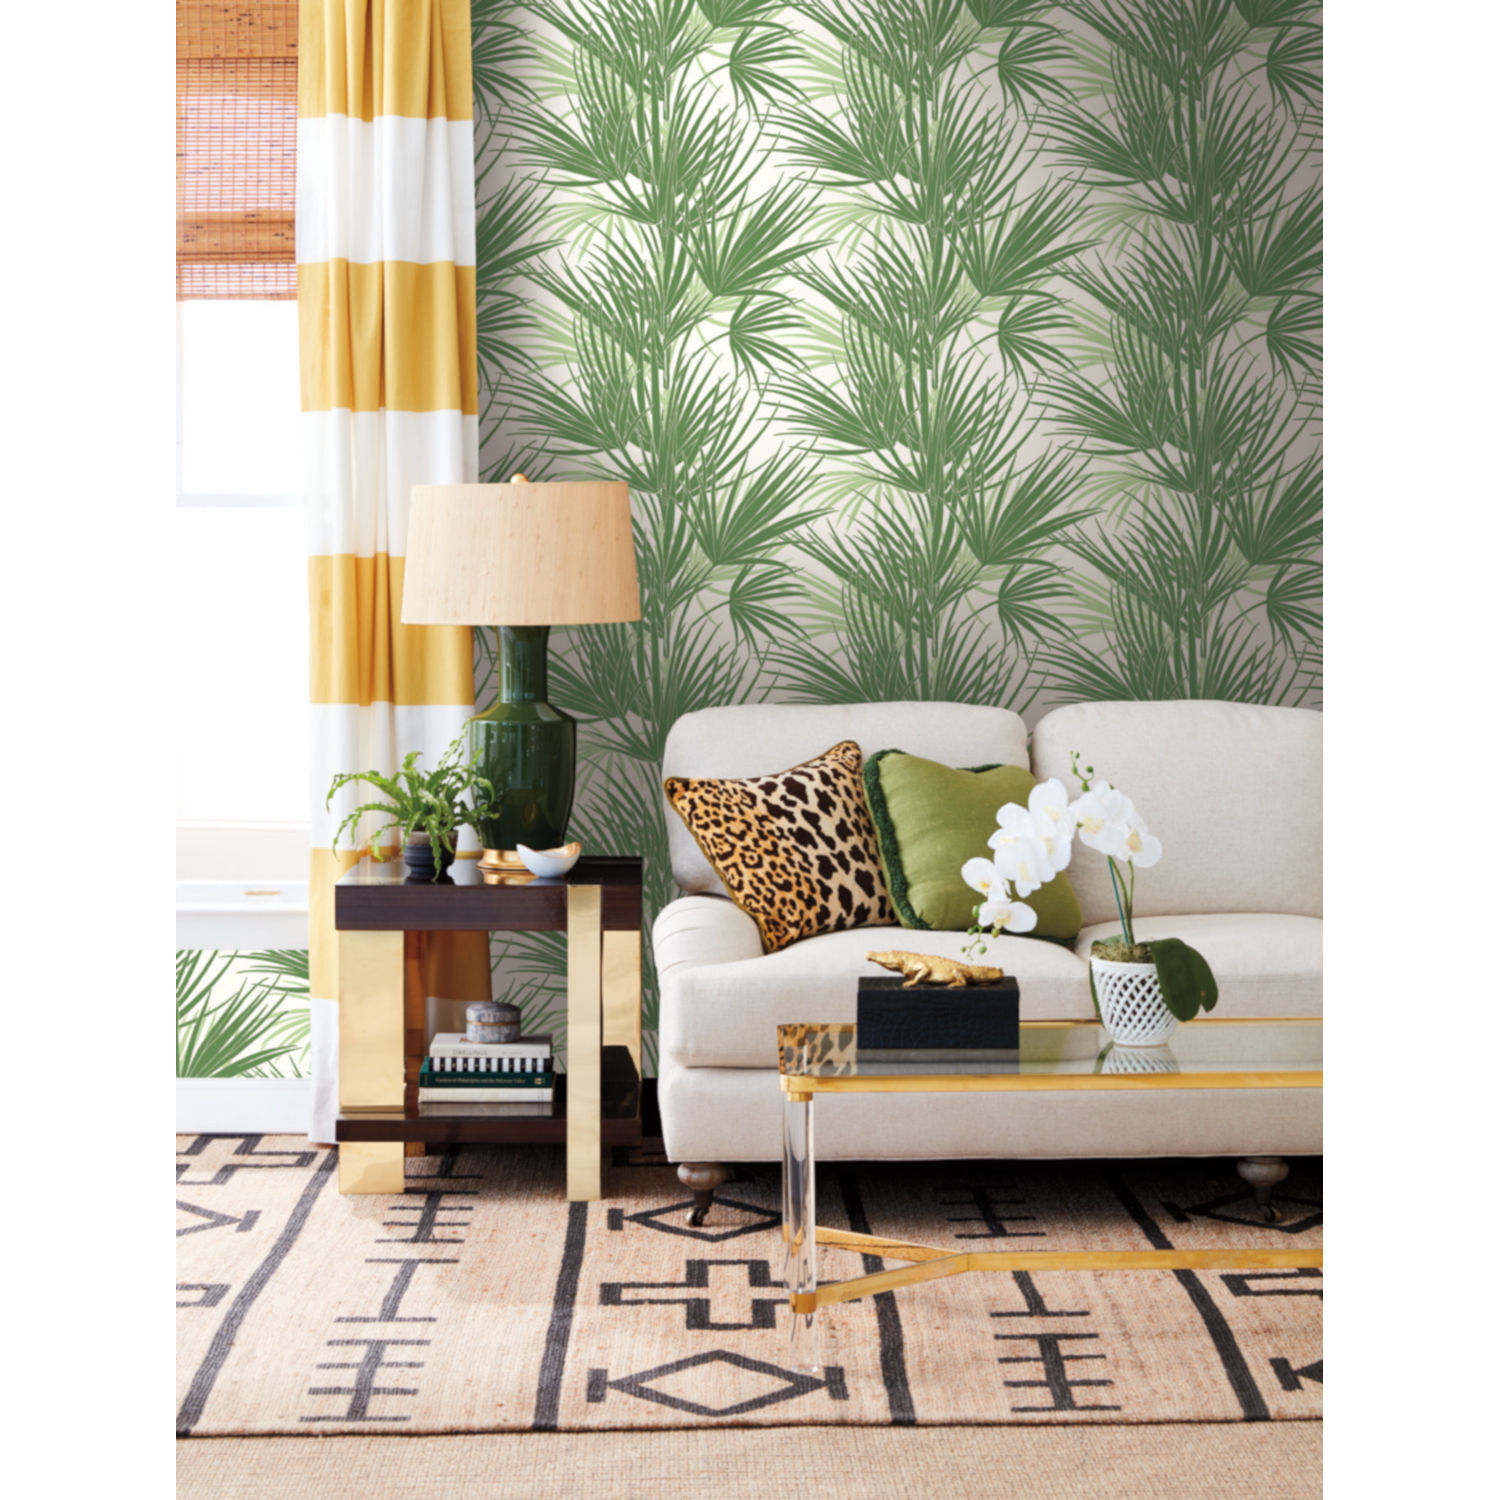 Silhouettes Green Palmetto Wallpaper